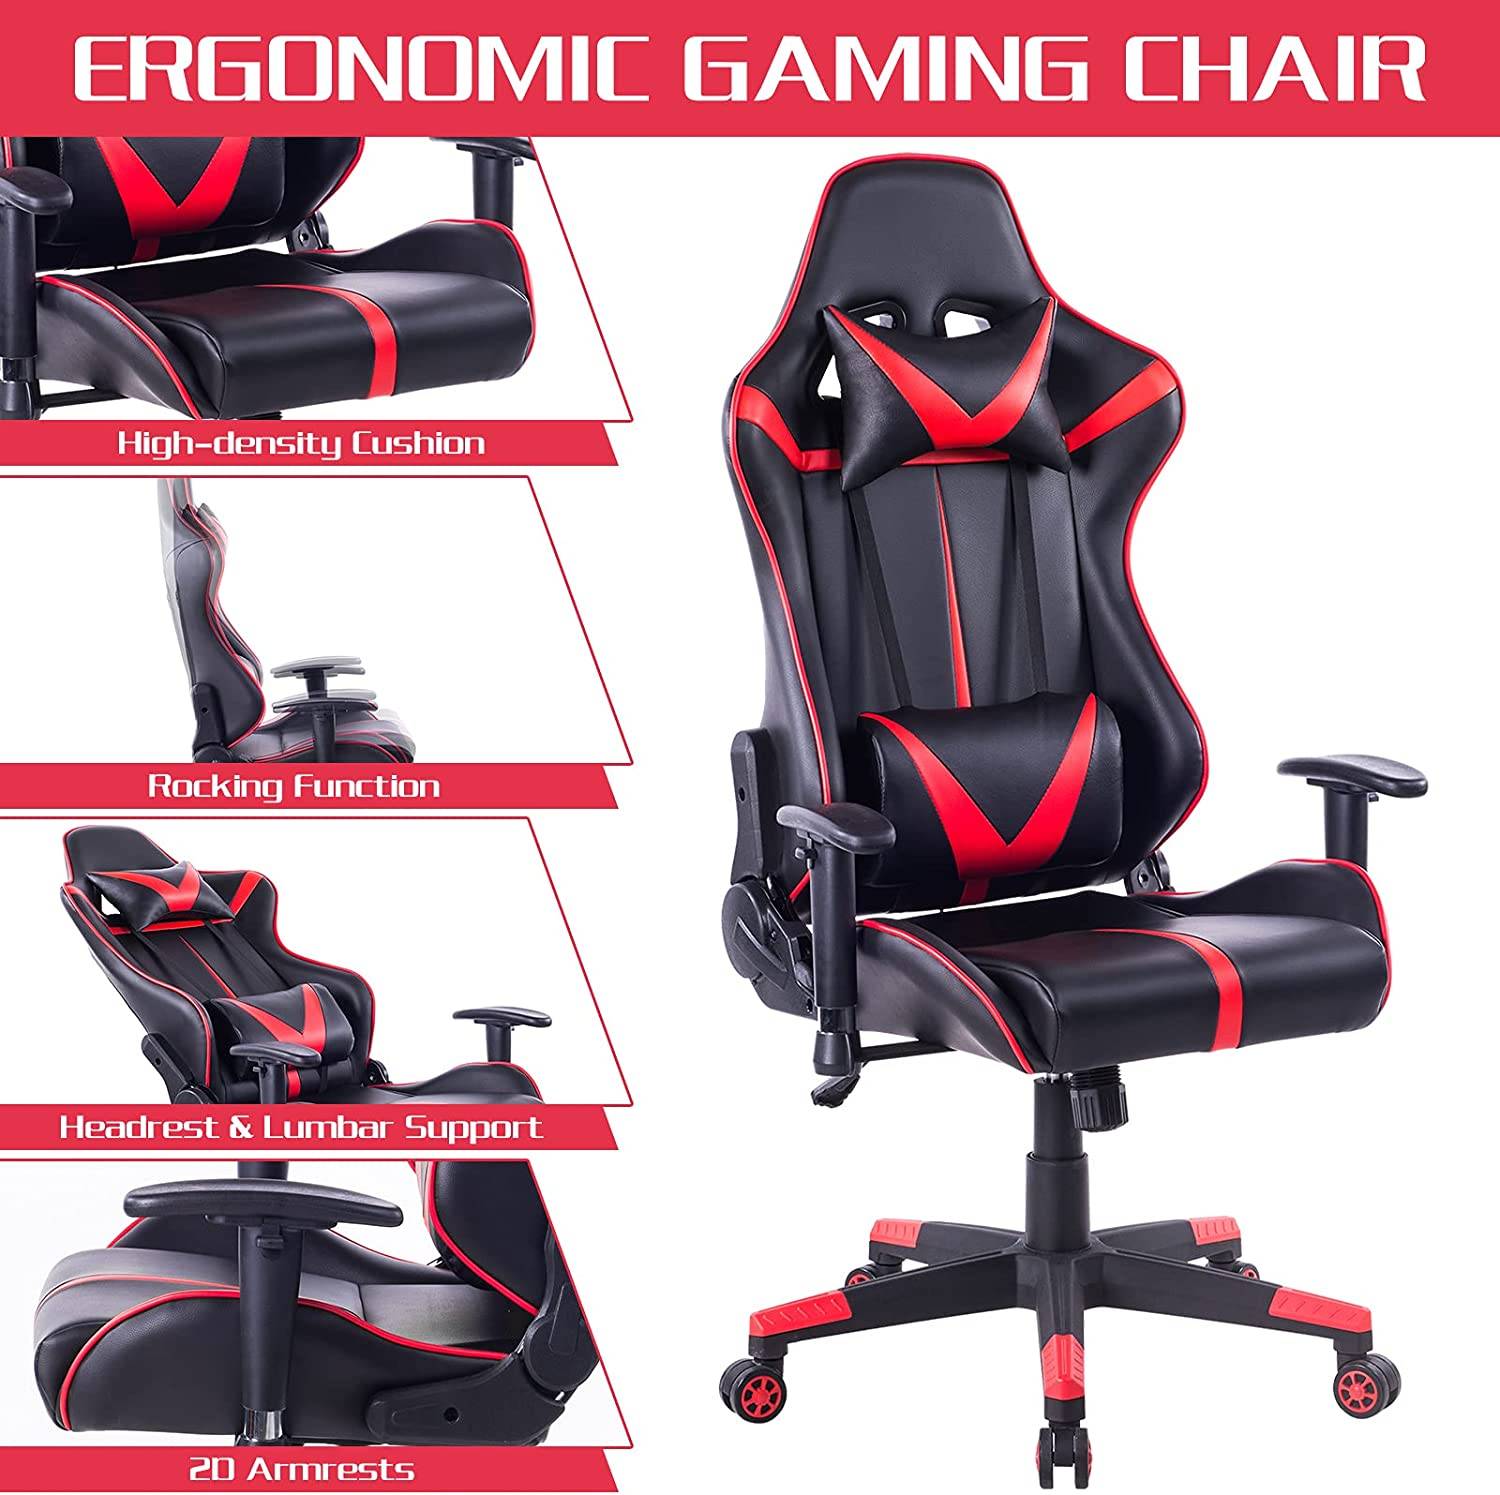 höhenverstellbar Gaming Stuhl Blau Racing Stuhl bis 150 kg belastbar Bürostuh mit Kopfstütze und Lendenkissen